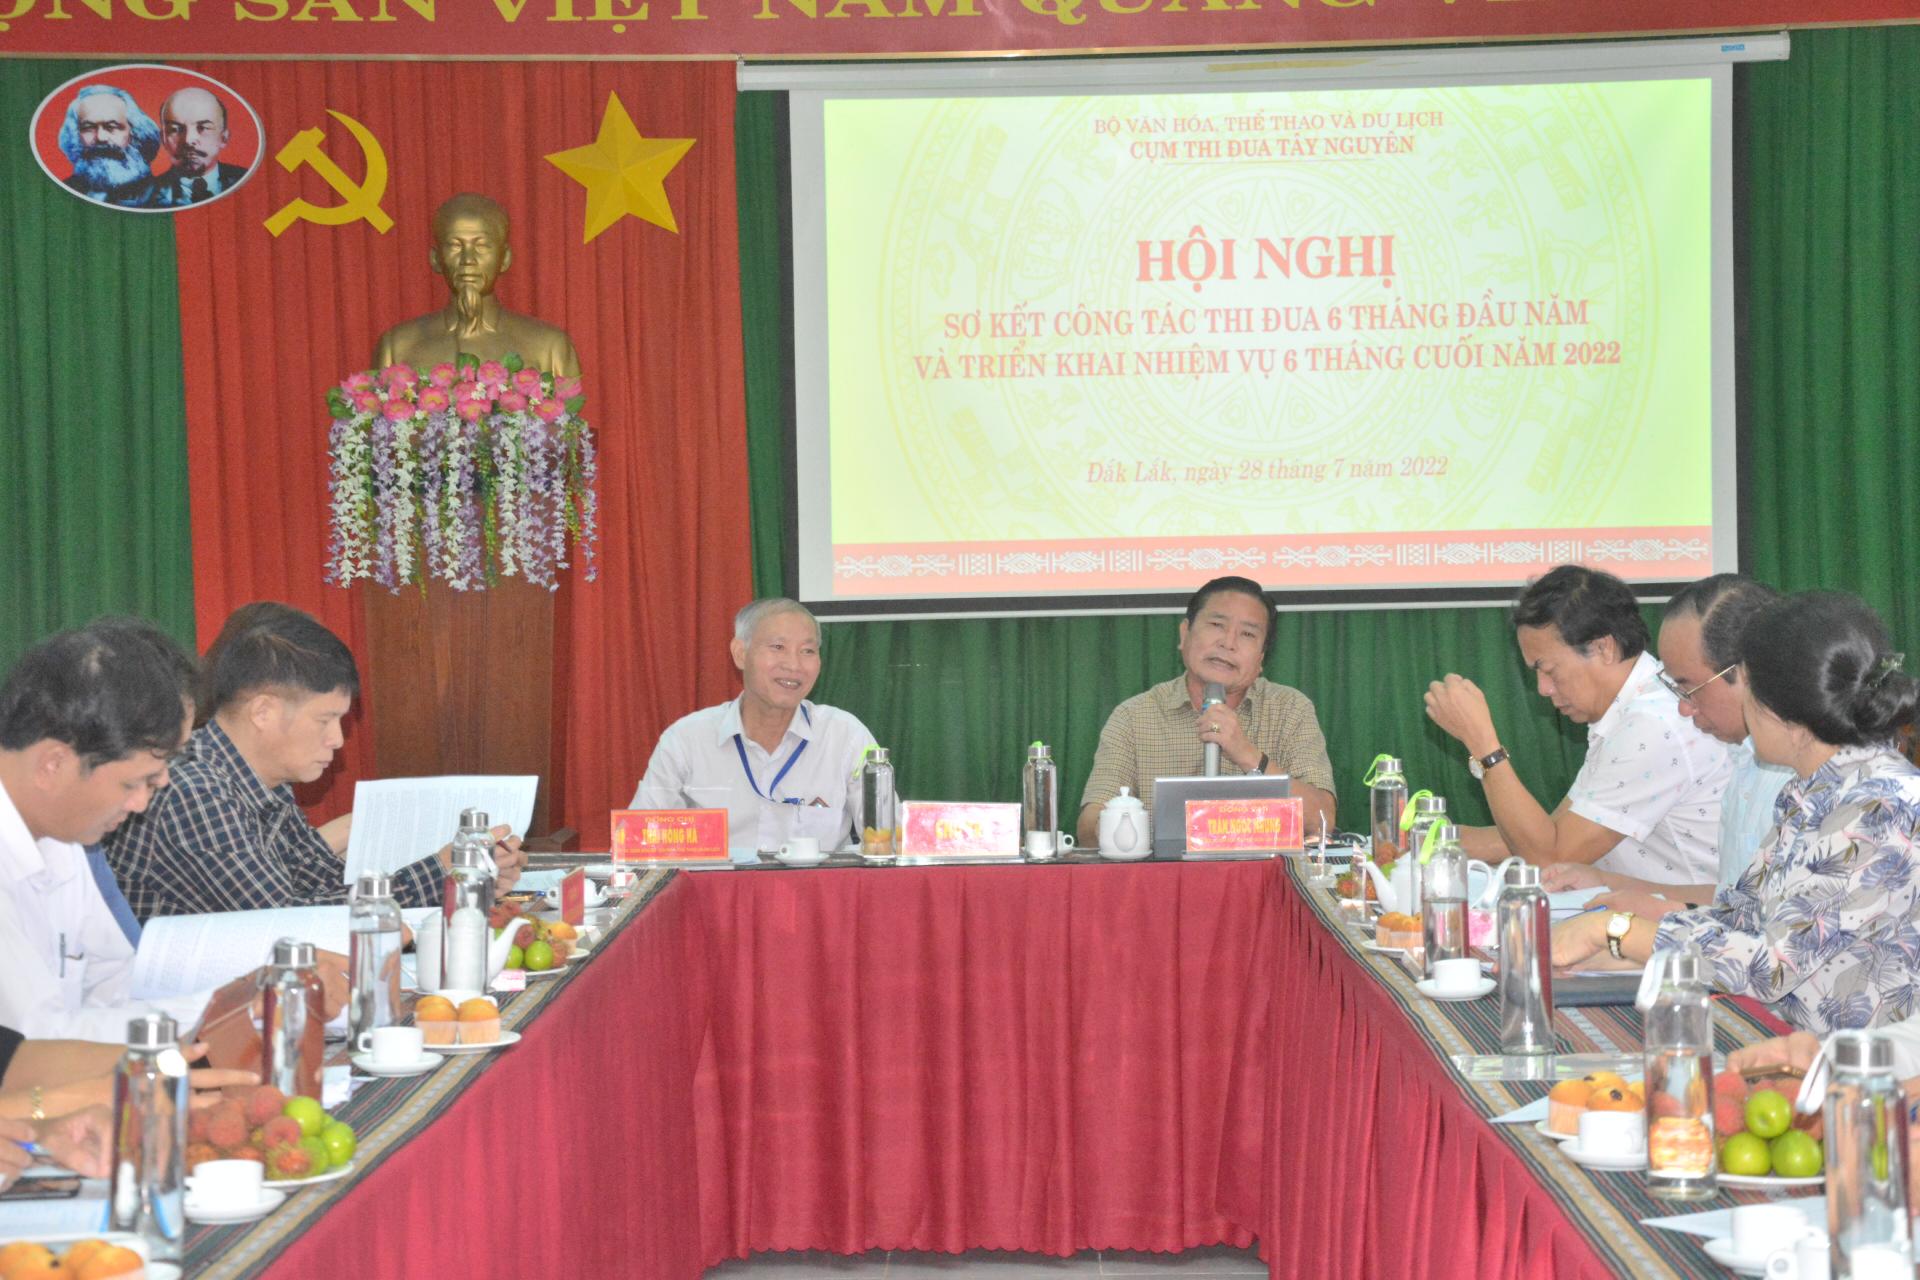 Giám đốc Sở Văn hóa, Thể thao và Du lịch tỉnh Gia Lai Trần Ngọc Nhung, Cụm trưởng cụm thi đua chỉ đạo điều hành hội nghị.